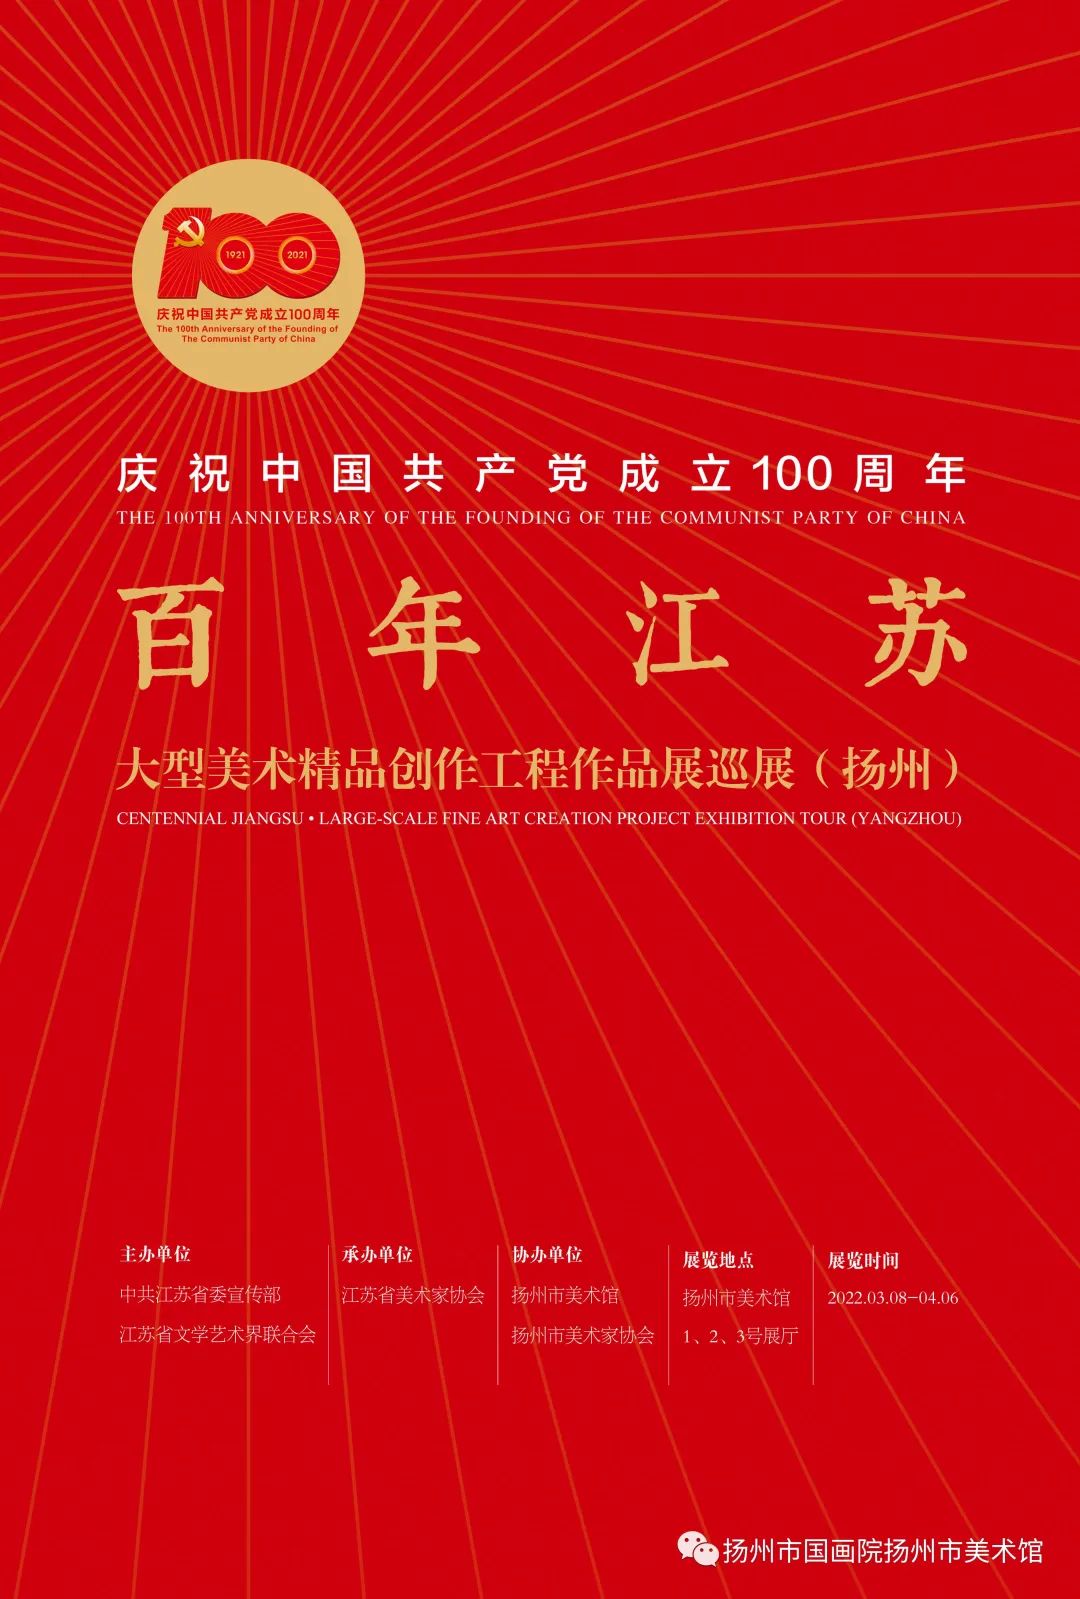 展讯：“百年江苏”大型美术精品创作工程作品展巡展（扬州）